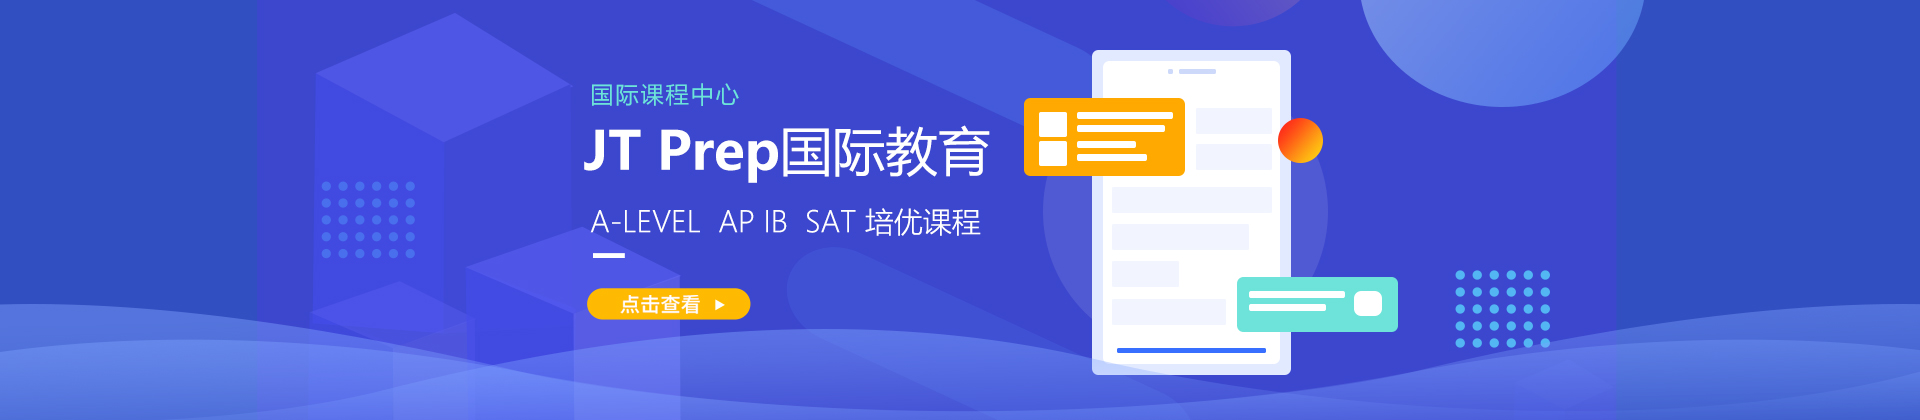 上海JTPrep国际教育